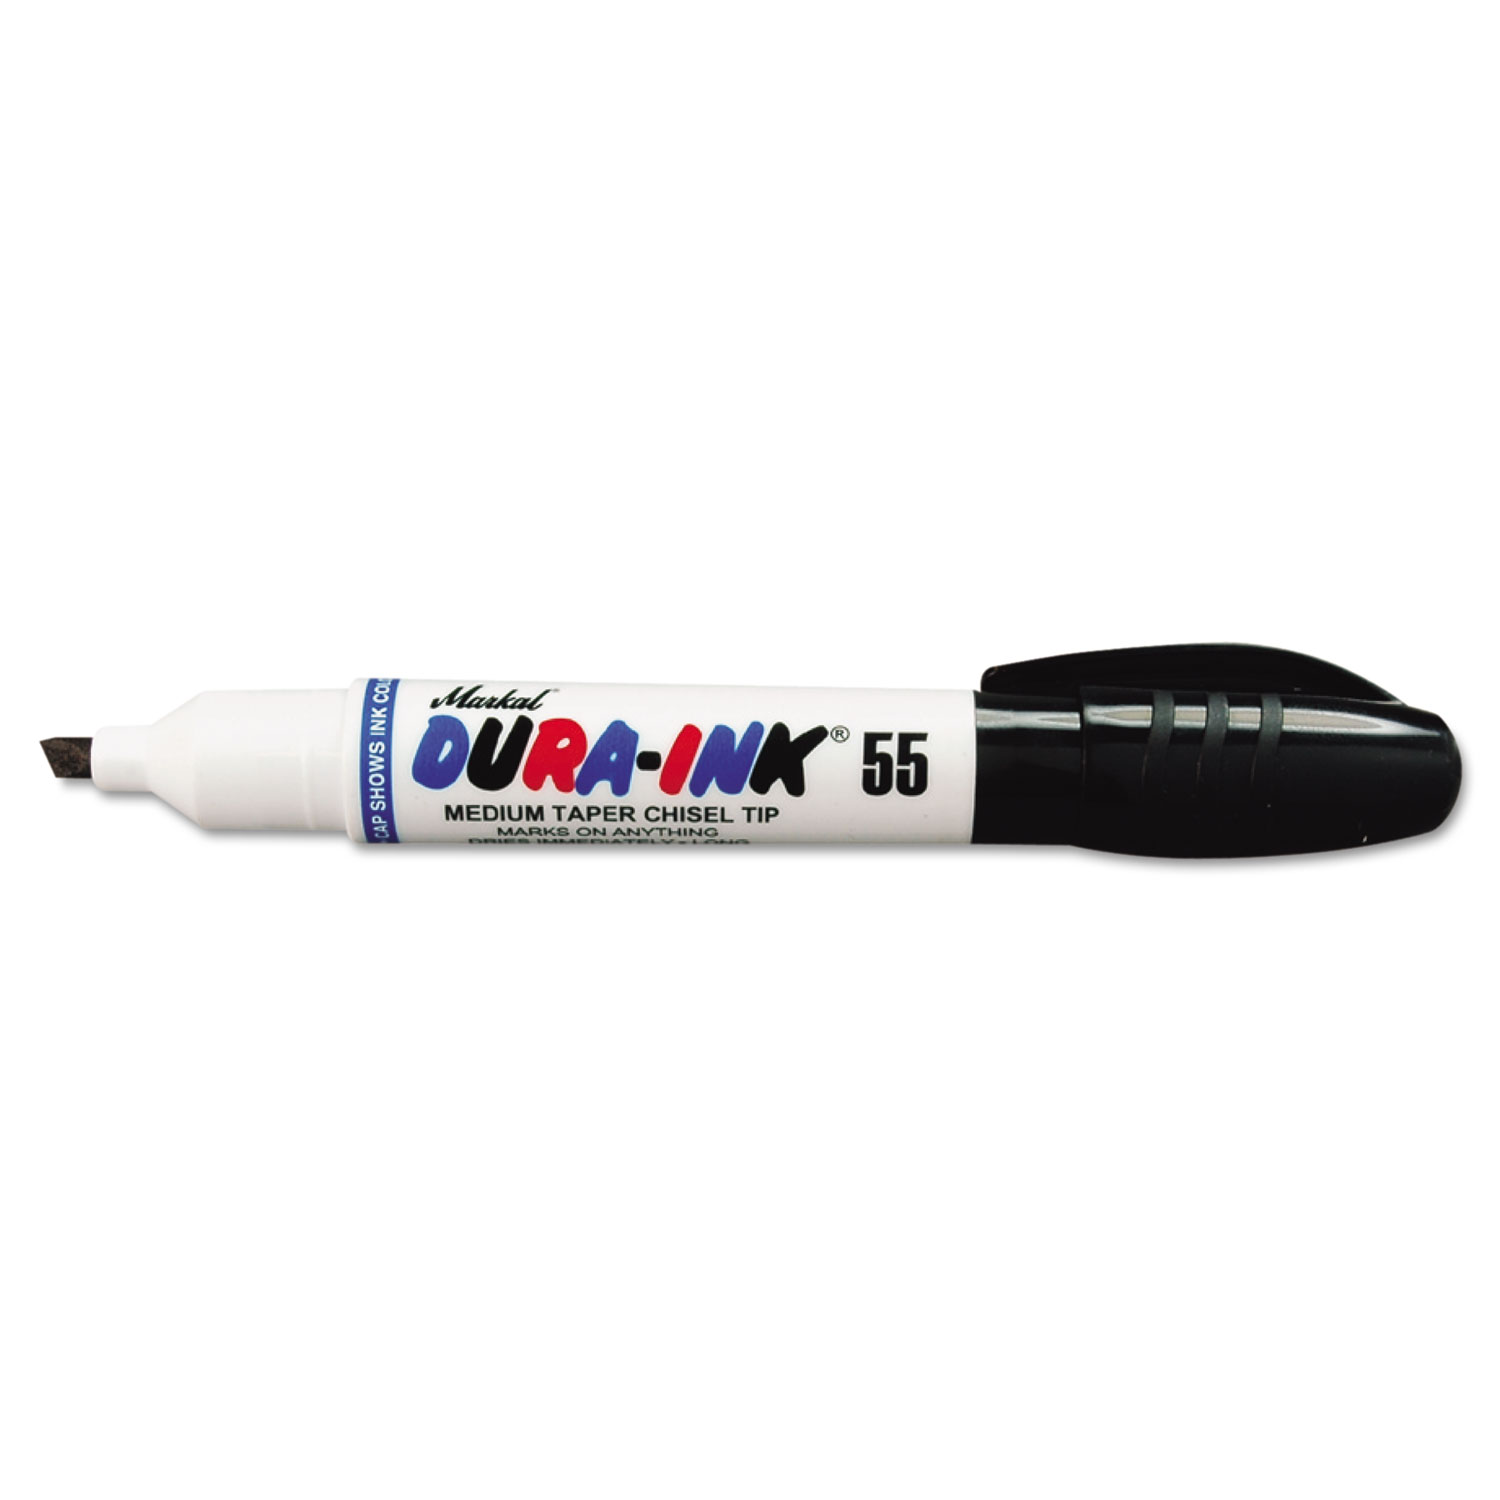  Markal 96223 Dura-Ink 25 King Size Marker 96223, Fine Bullet Tip, Black (MRK96223) 